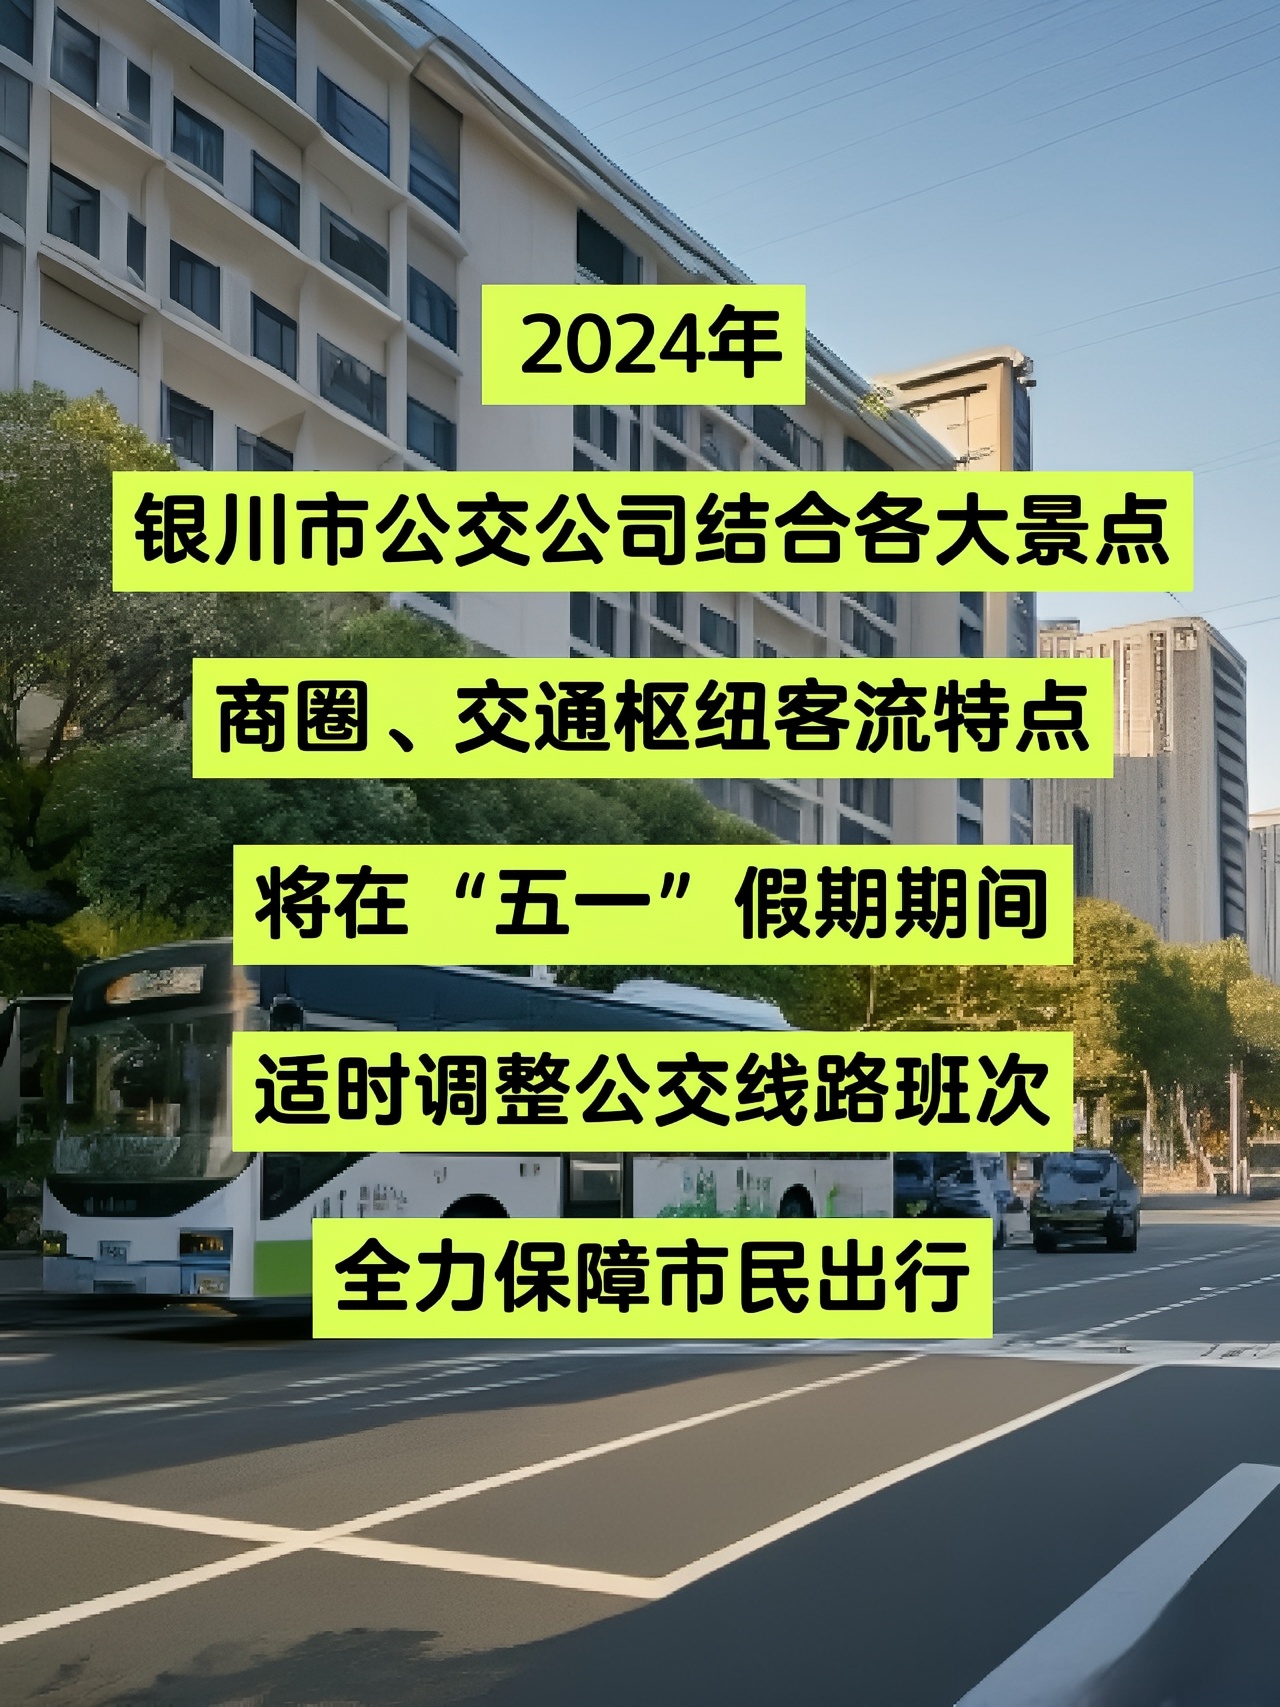 2024年五一假期银川市公交线路调整详情